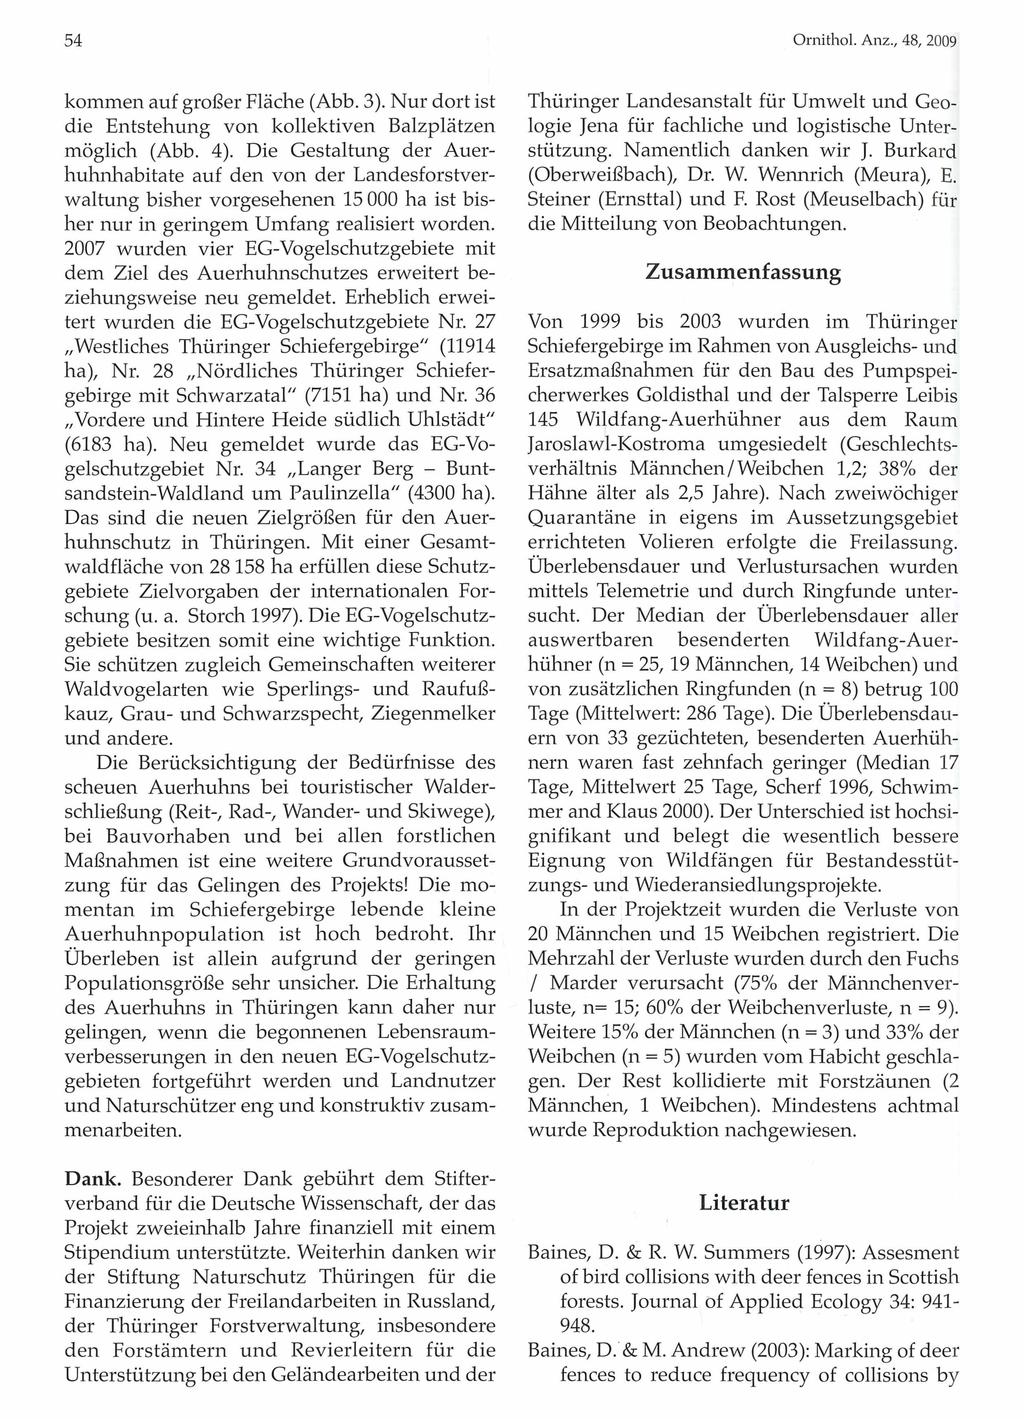 54 Ornithologische Gesellschaft Bayern, download unter www.biologiezentrum.at kommen auf großer Fläche (Abb. 3). Nur dort ist die Entstehung von kollektiven Balzplätzen möglich (Abb. 4).